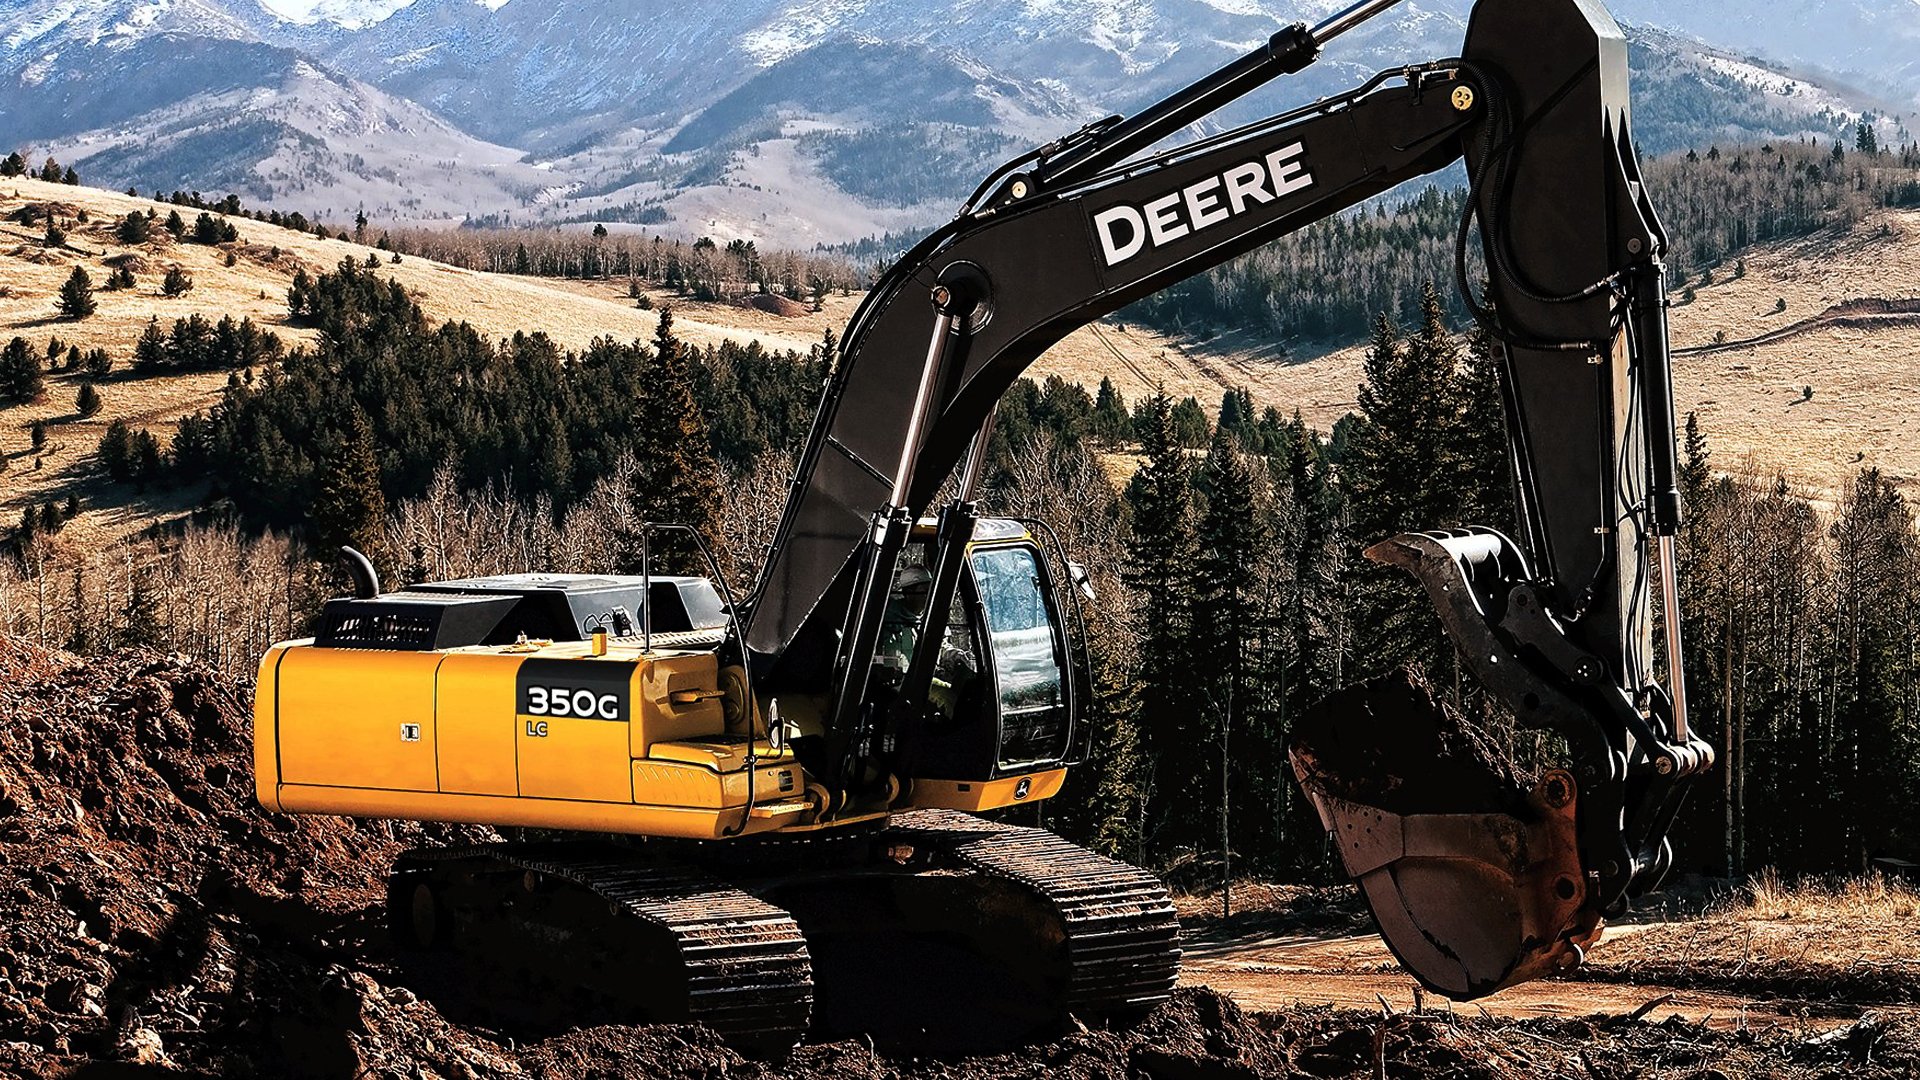 John Deere 350G Excavator HD Wallpapers and Backgrounds